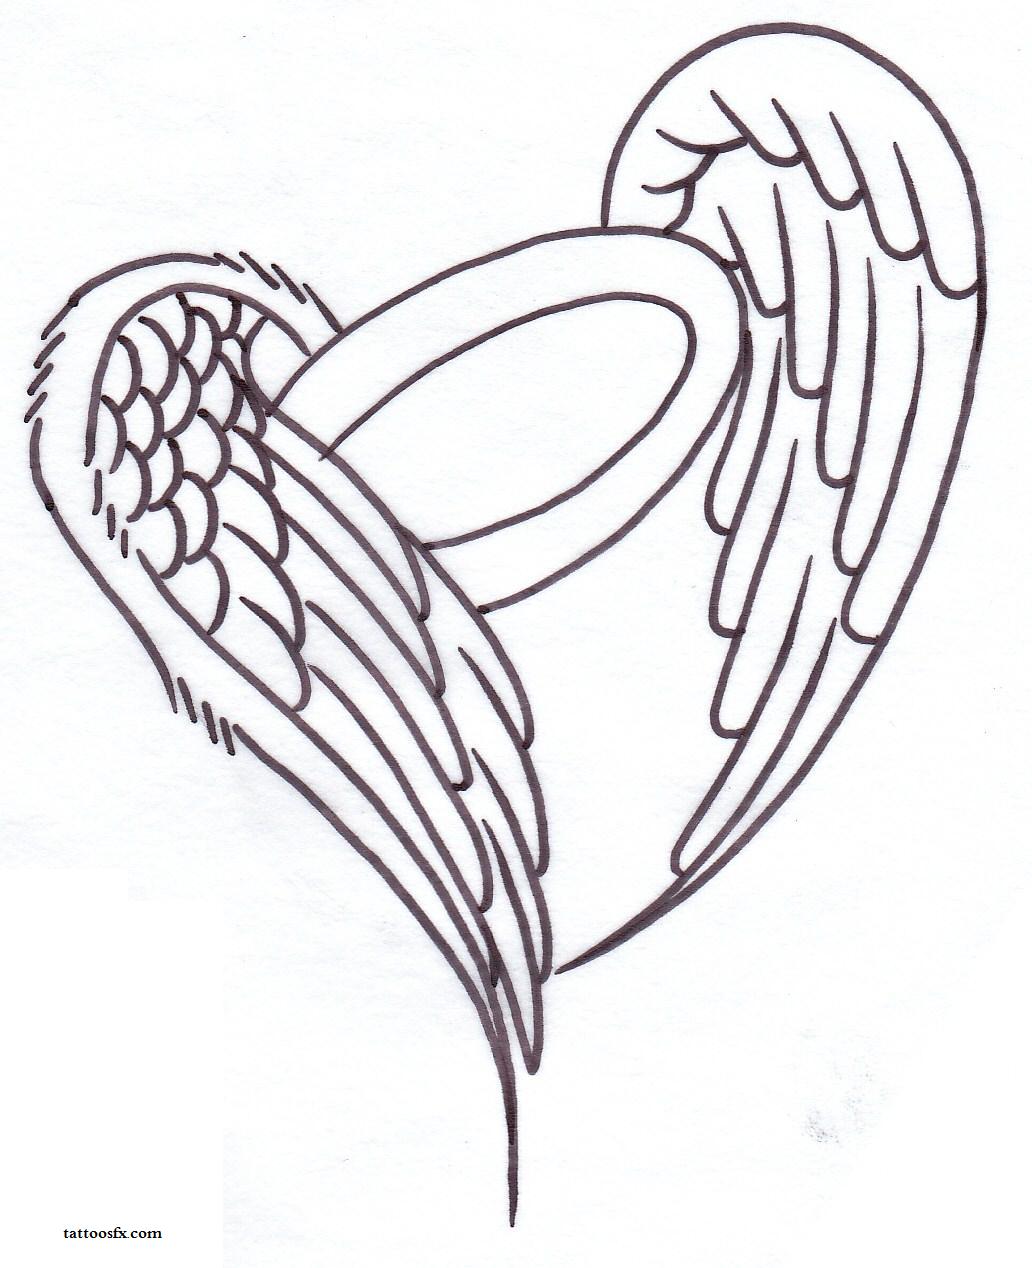 Angel wing tattoo designs - key tattoo designs - free tattoo designs